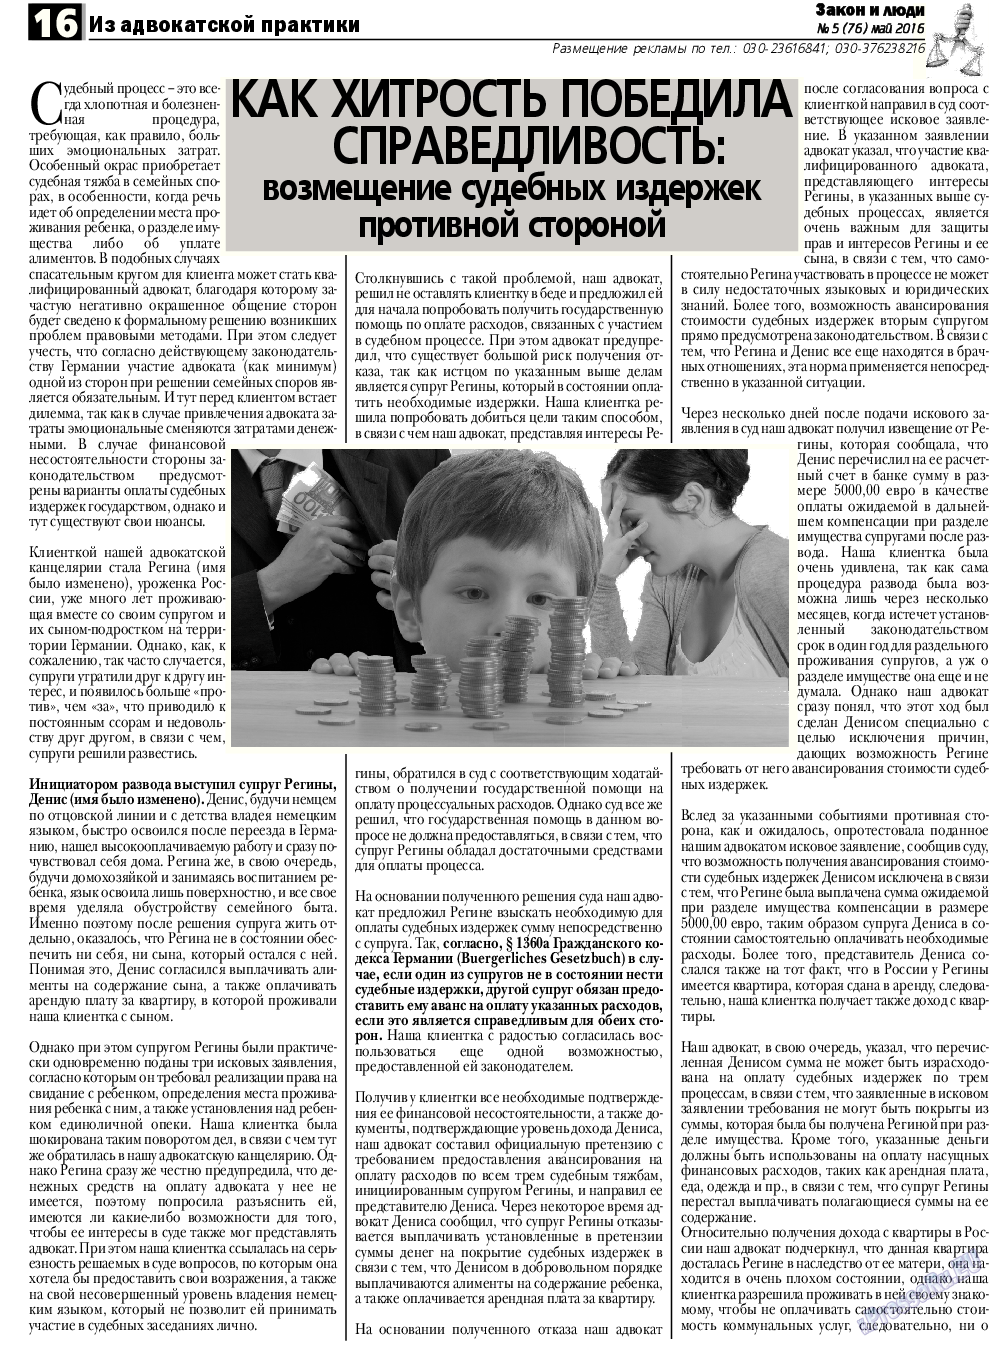 Закон и люди, газета. 2016 №5 стр.16